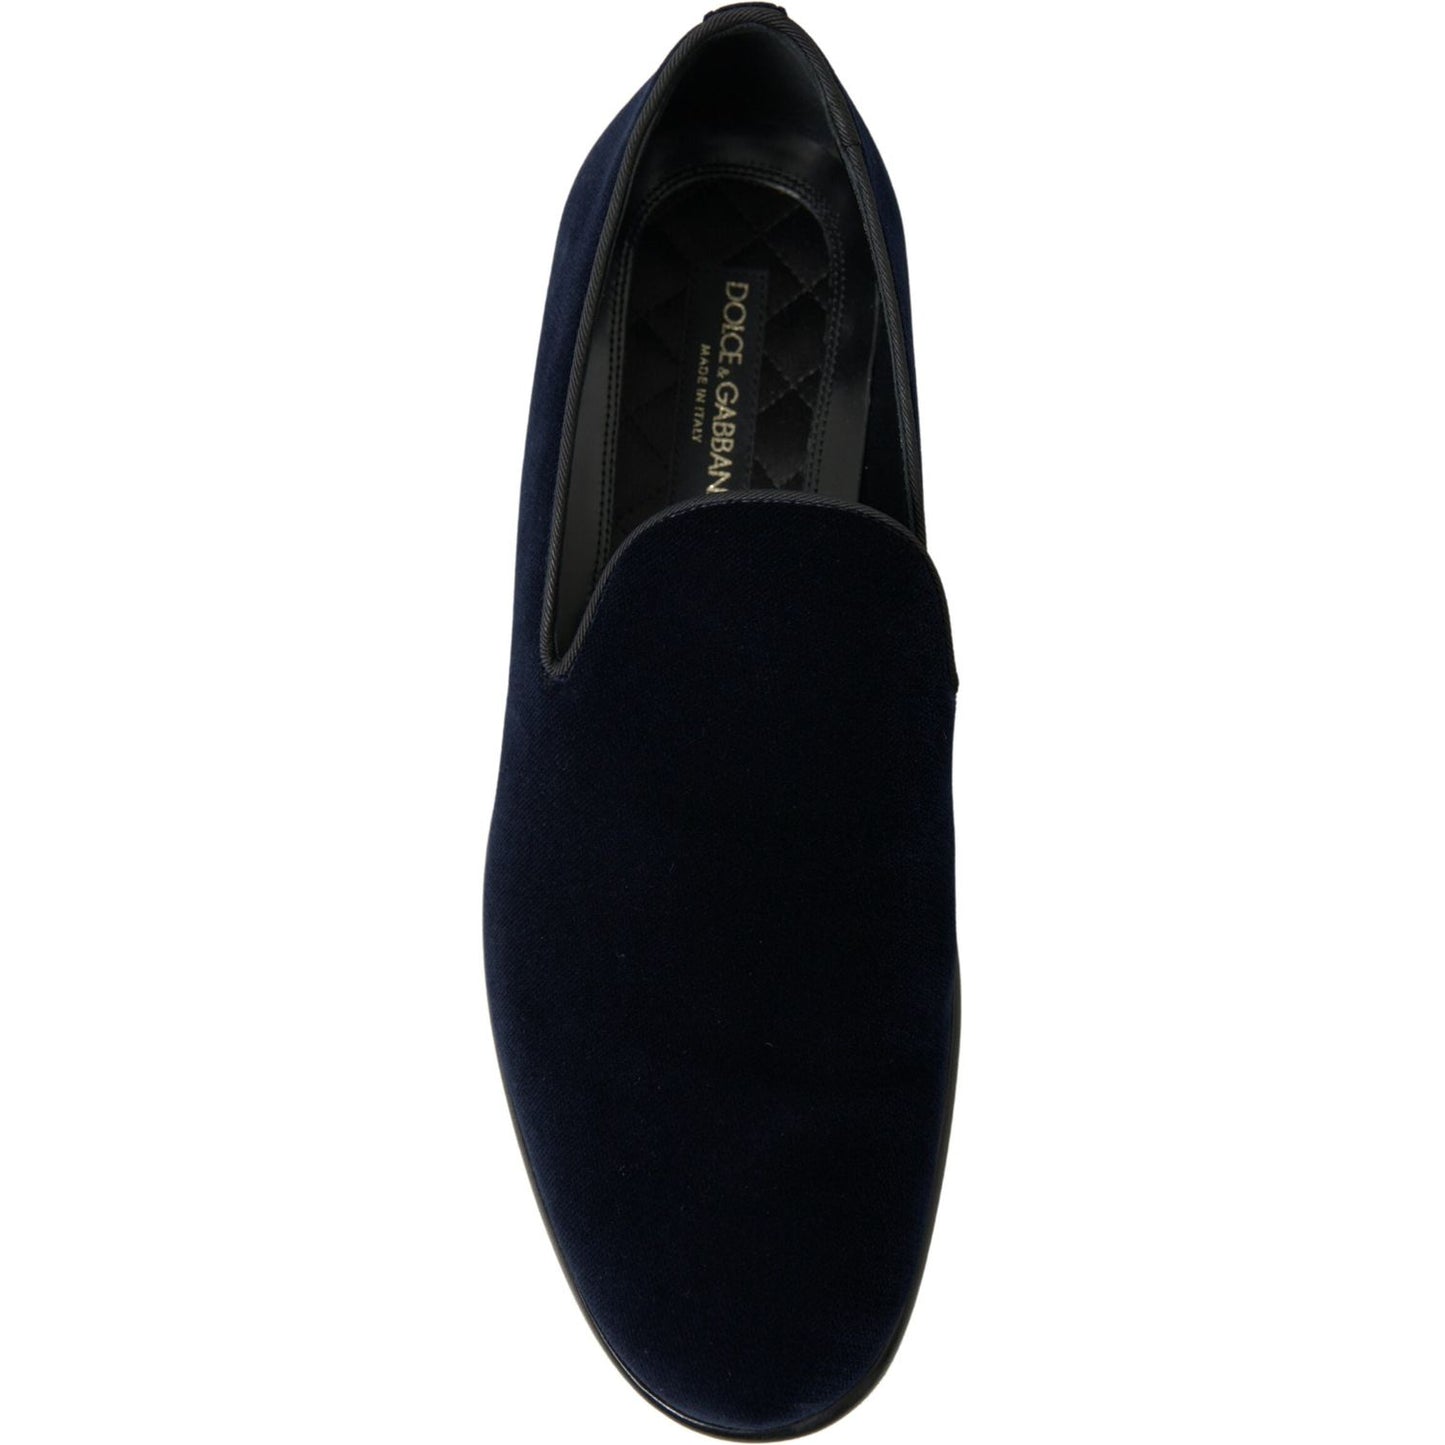 Dolce & Gabbana Elegant Blue Velvet Loafers for Men blue-velvet-loafers-formal-shoes 465A8172-scaled-ce081cb5-4e7_1c08338e-ff45-480c-bda2-e9f4035fa652.jpg